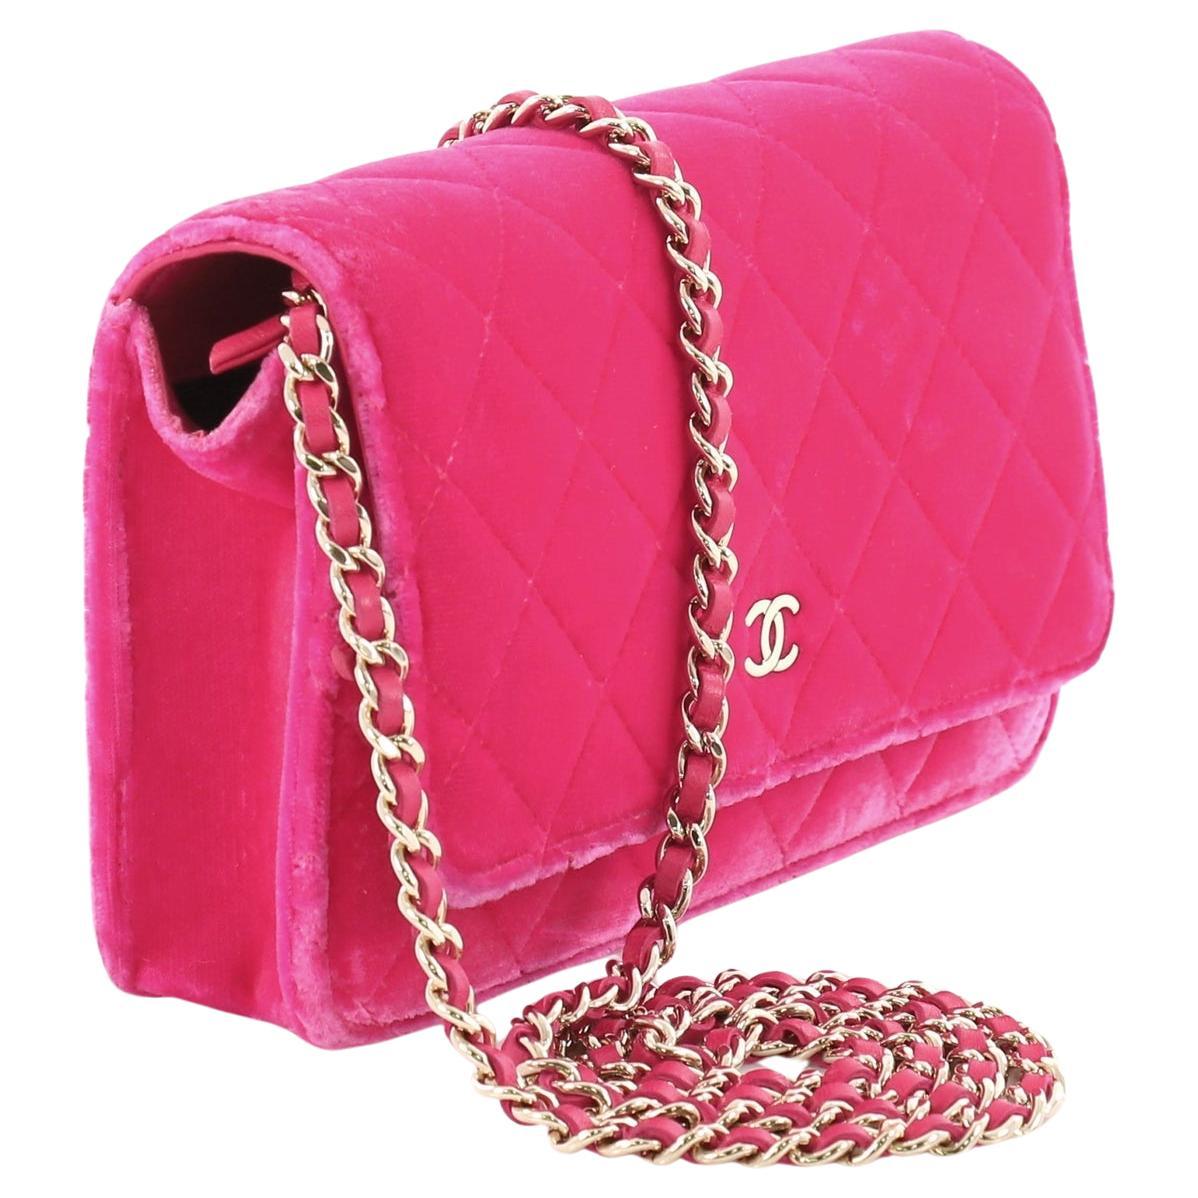 Chanel Velvet Neon Pink Brieftasche auf Kette WOC Crossbody Flap Bag

Jahr: 2014  

Silberne Hardware
Heißer rosa Samt 
Innentasche mit Reißverschluss auf der Klappe
Innenraum 6 Kartensteckplätze
Großes zentriertes Reißverschlussfach